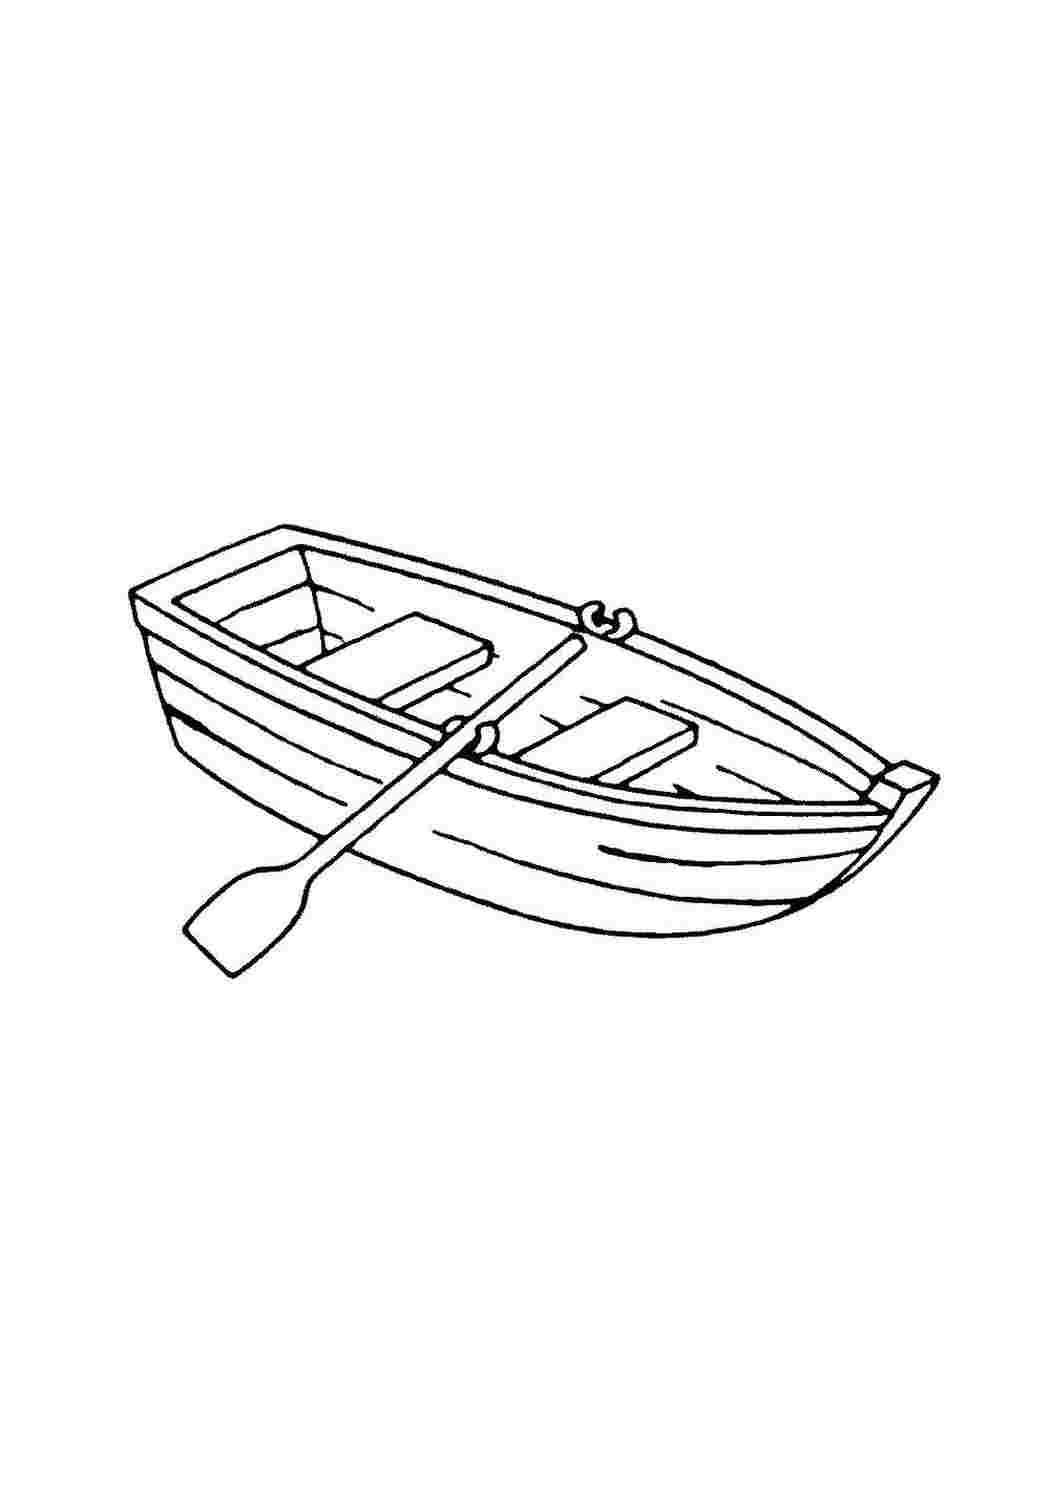 страница 2 | Картинки раскрашивания лодки Изображения – скачать бесплатно на Freepik